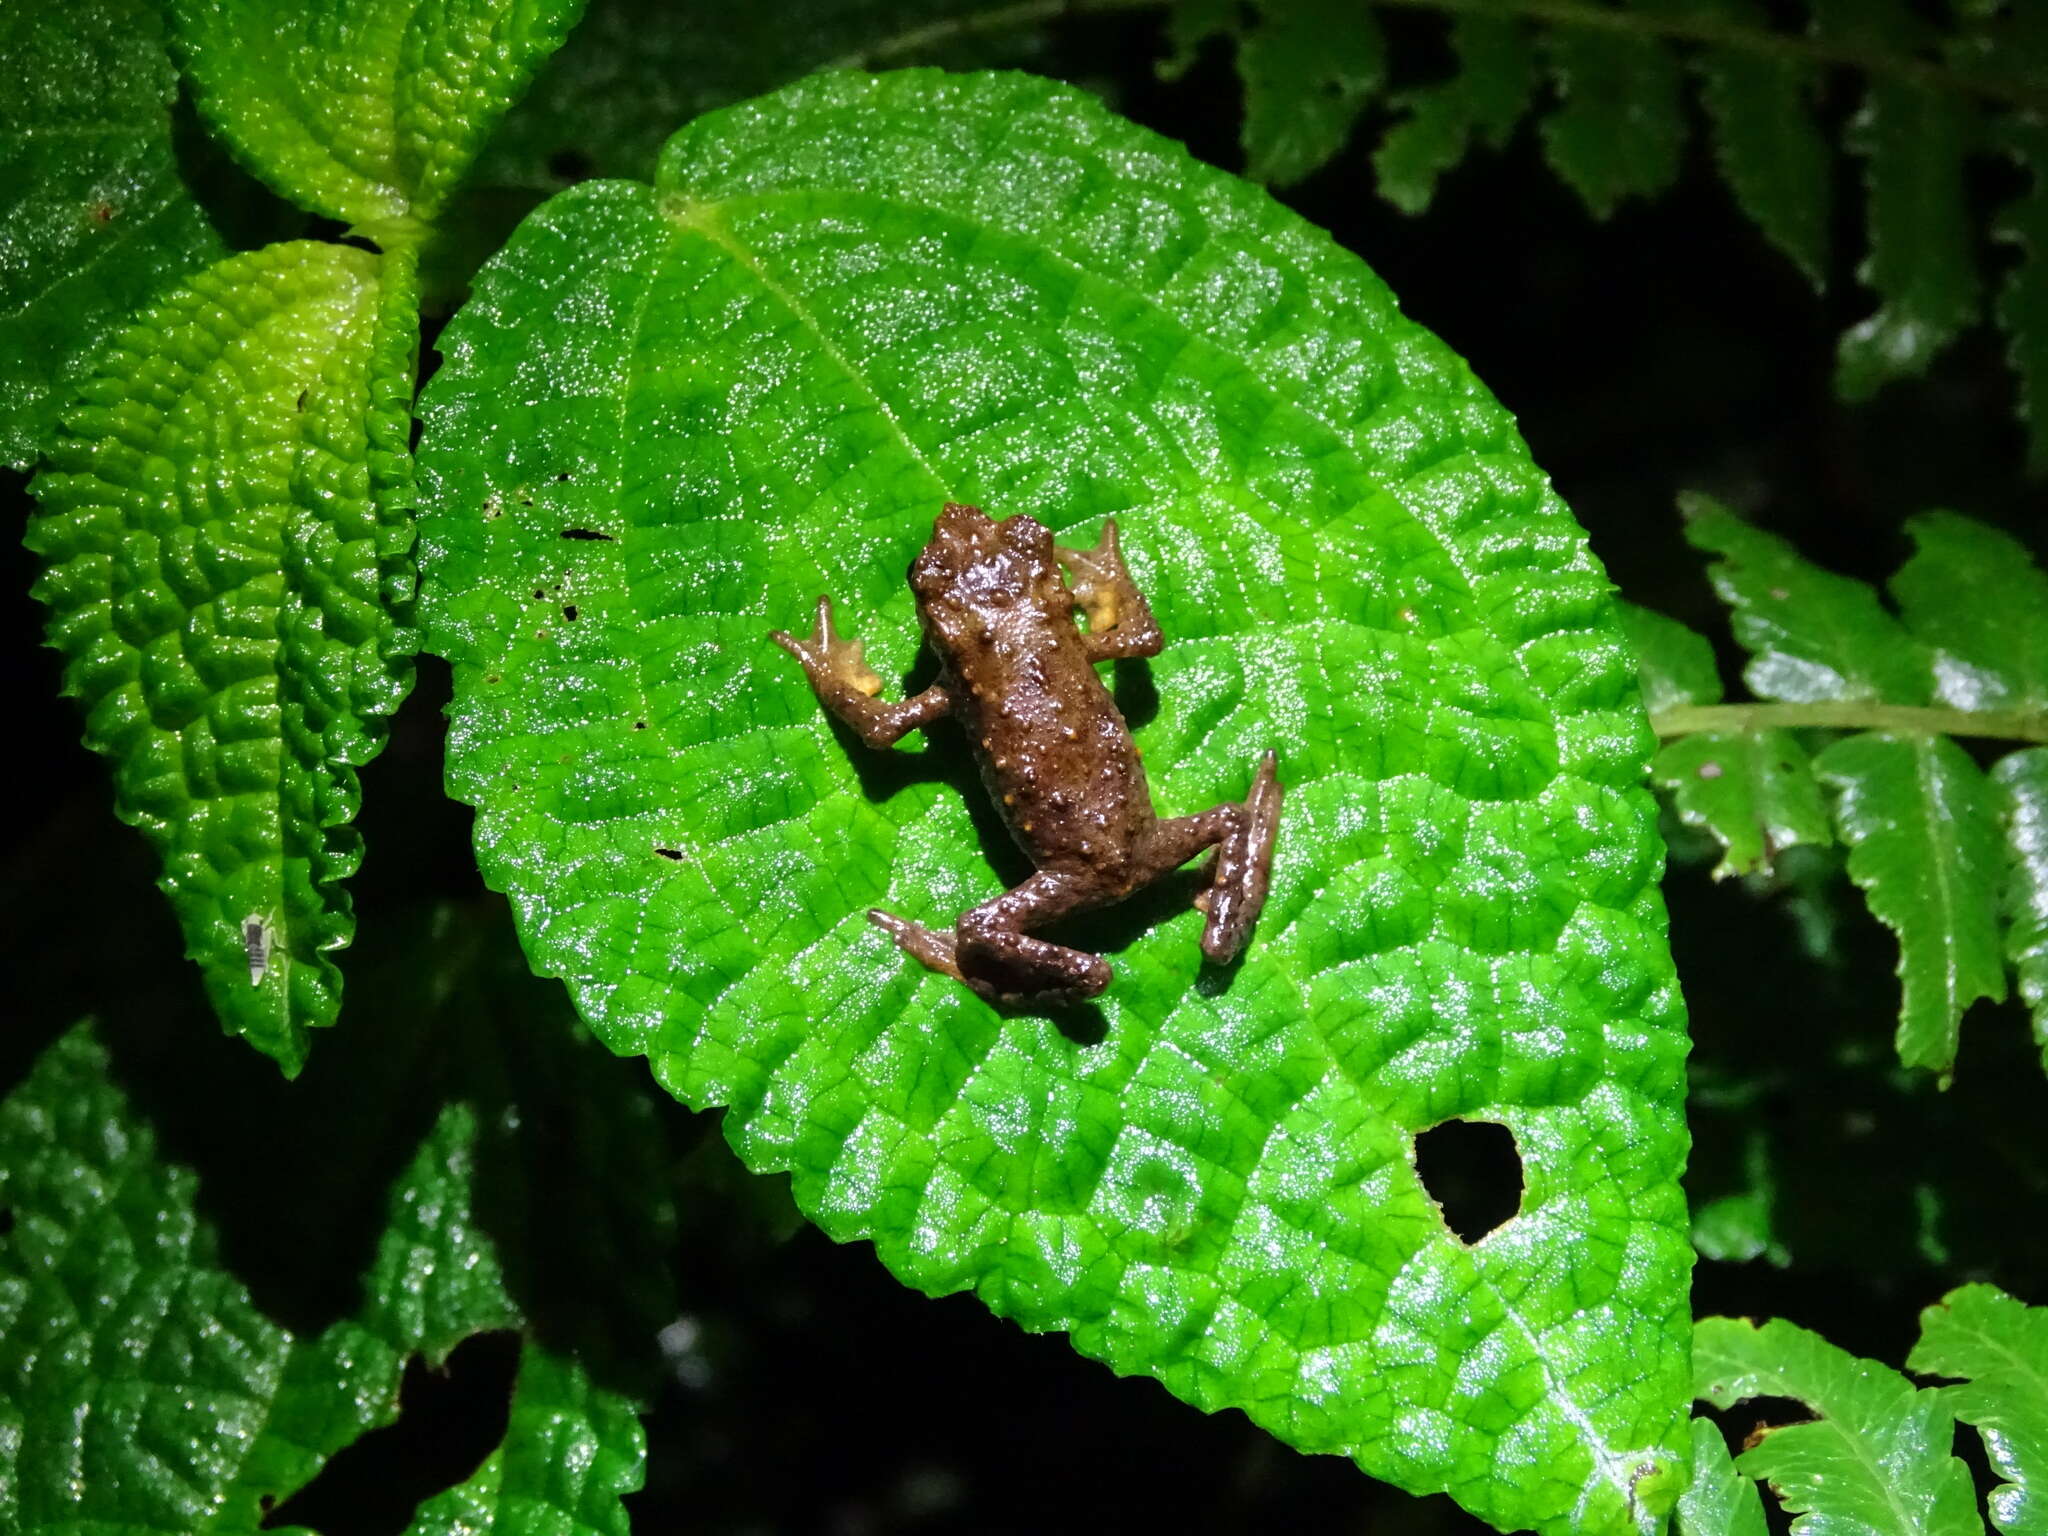 Image of Guacamayo Plump Toad